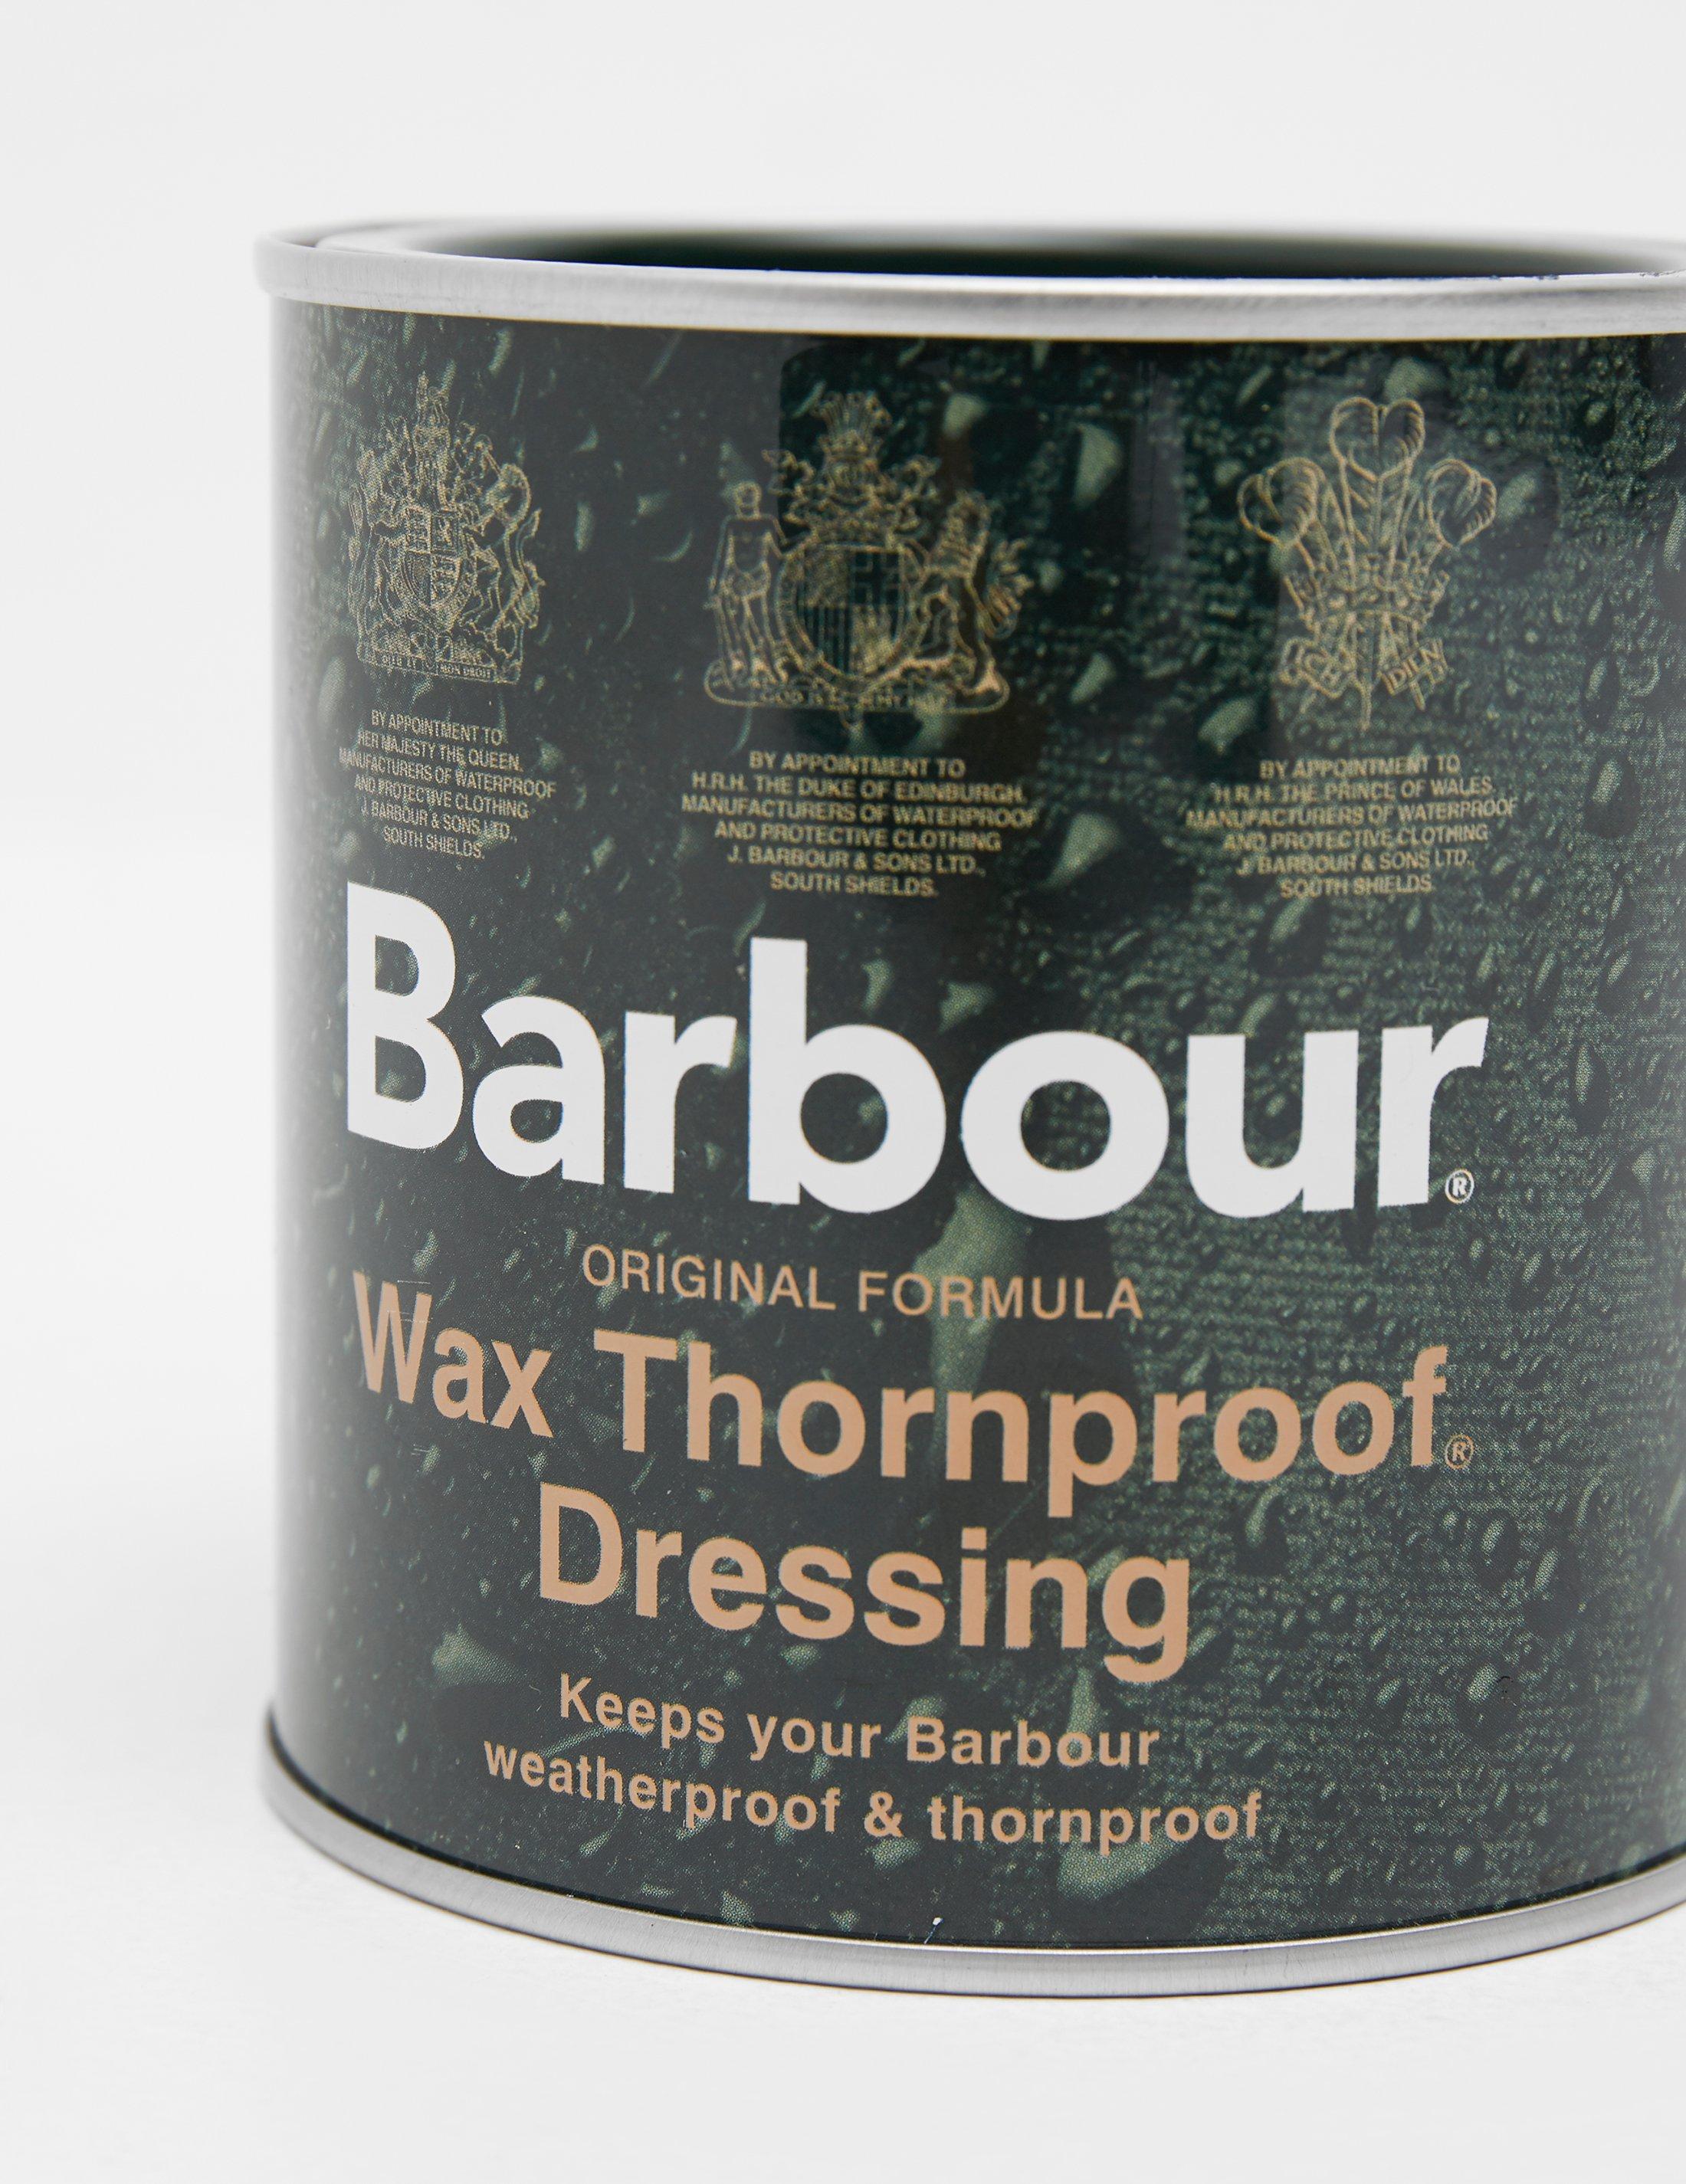 barbour wax thornproof